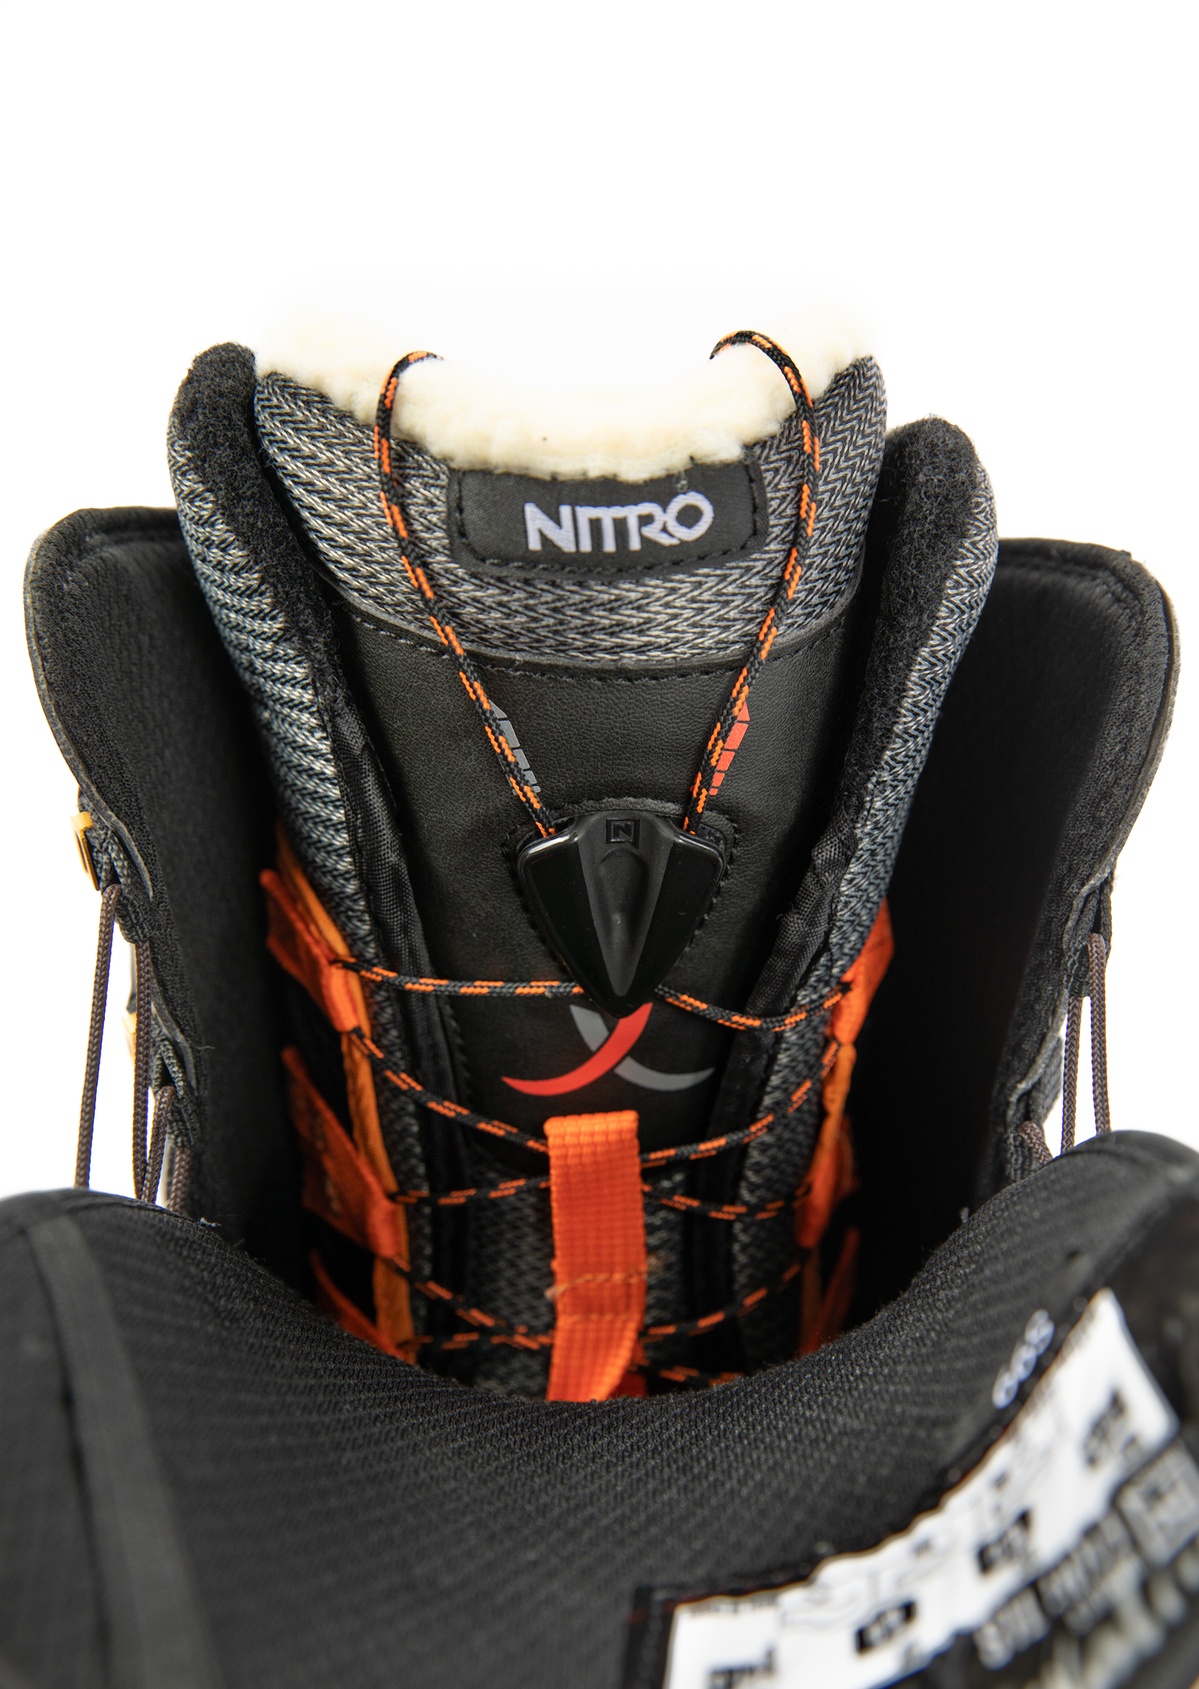 最新作正規品使用2回 ハイスペック 20/21 NITRO FAINT TLS レディース24.5cm スノーボードブーツ ナイトロ フェイント 24.5cm